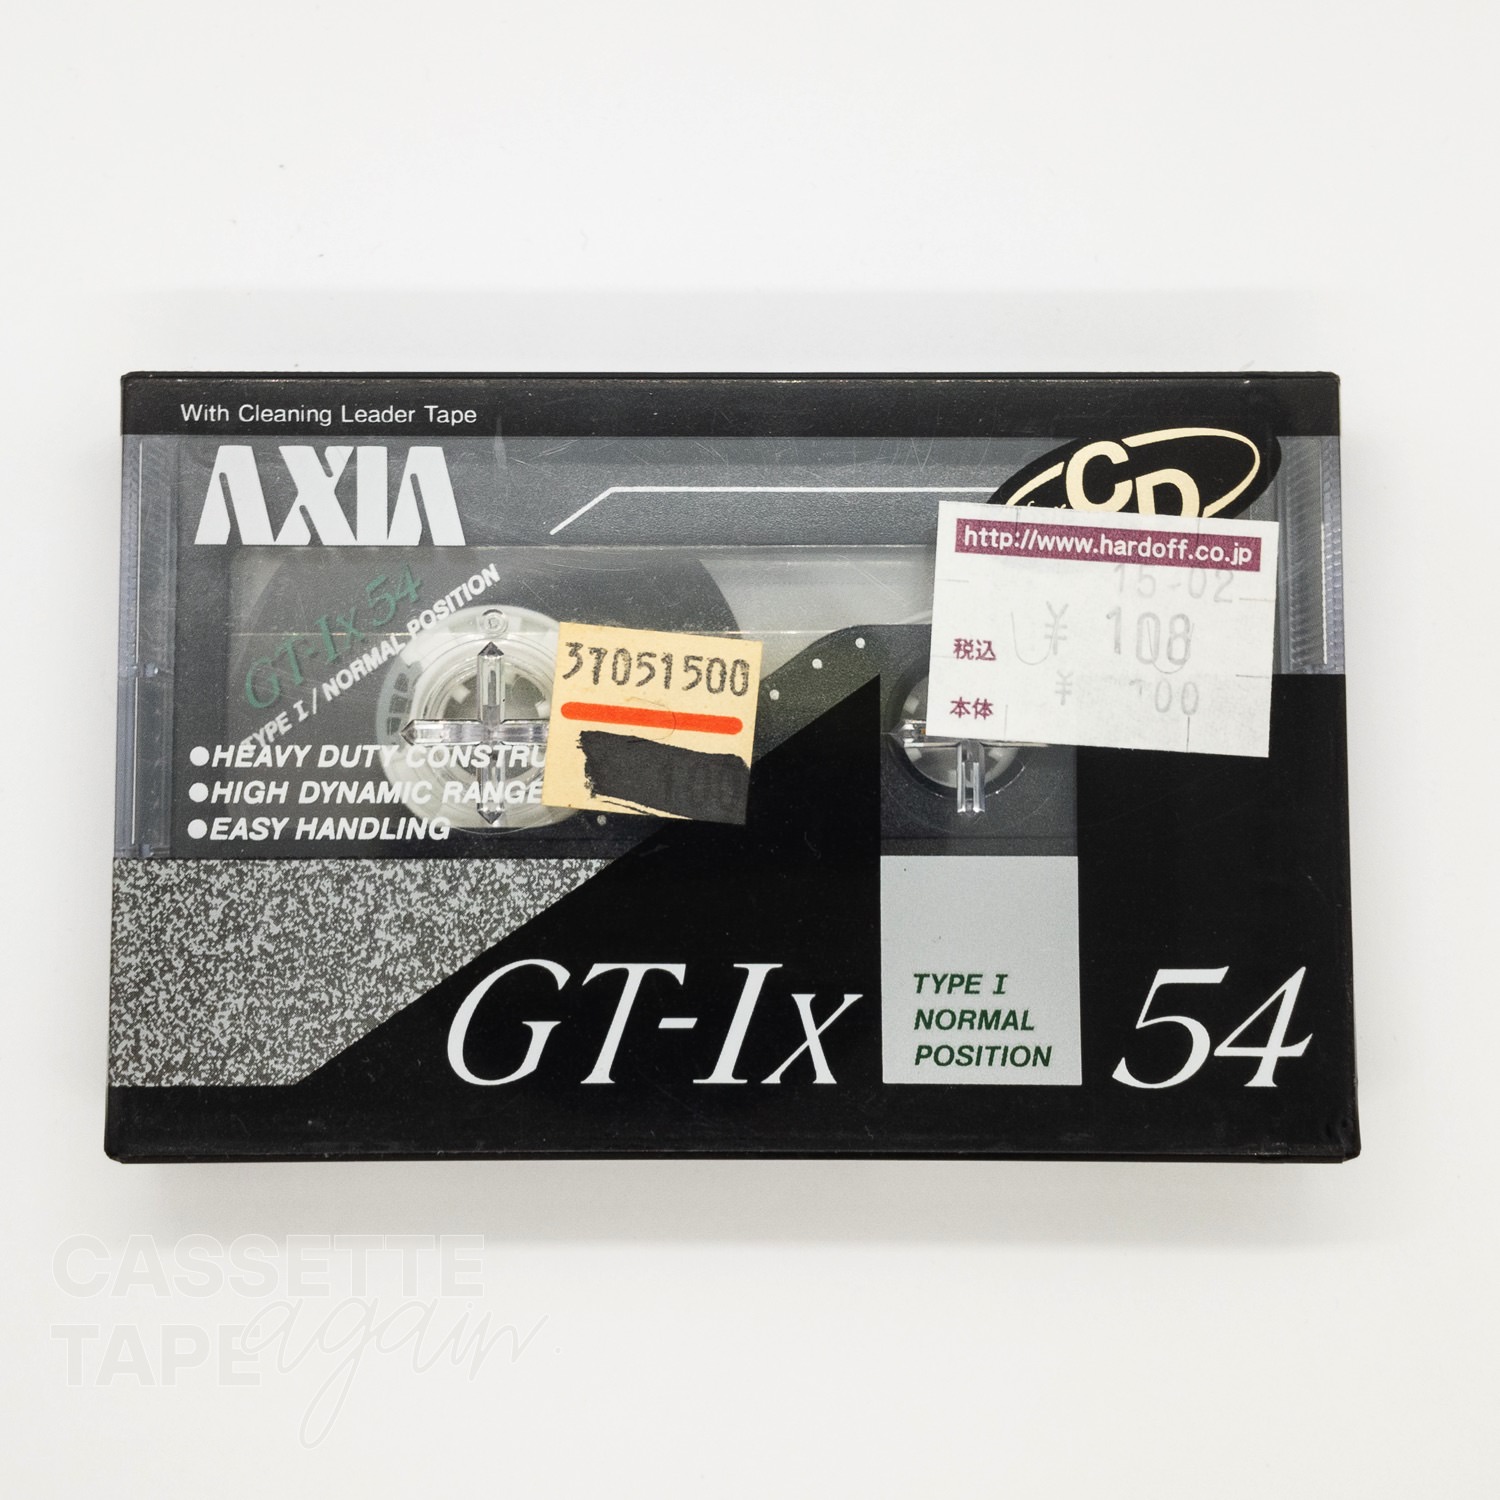 GT-Ix 54 / AXIA/FUJI(ノーマル)